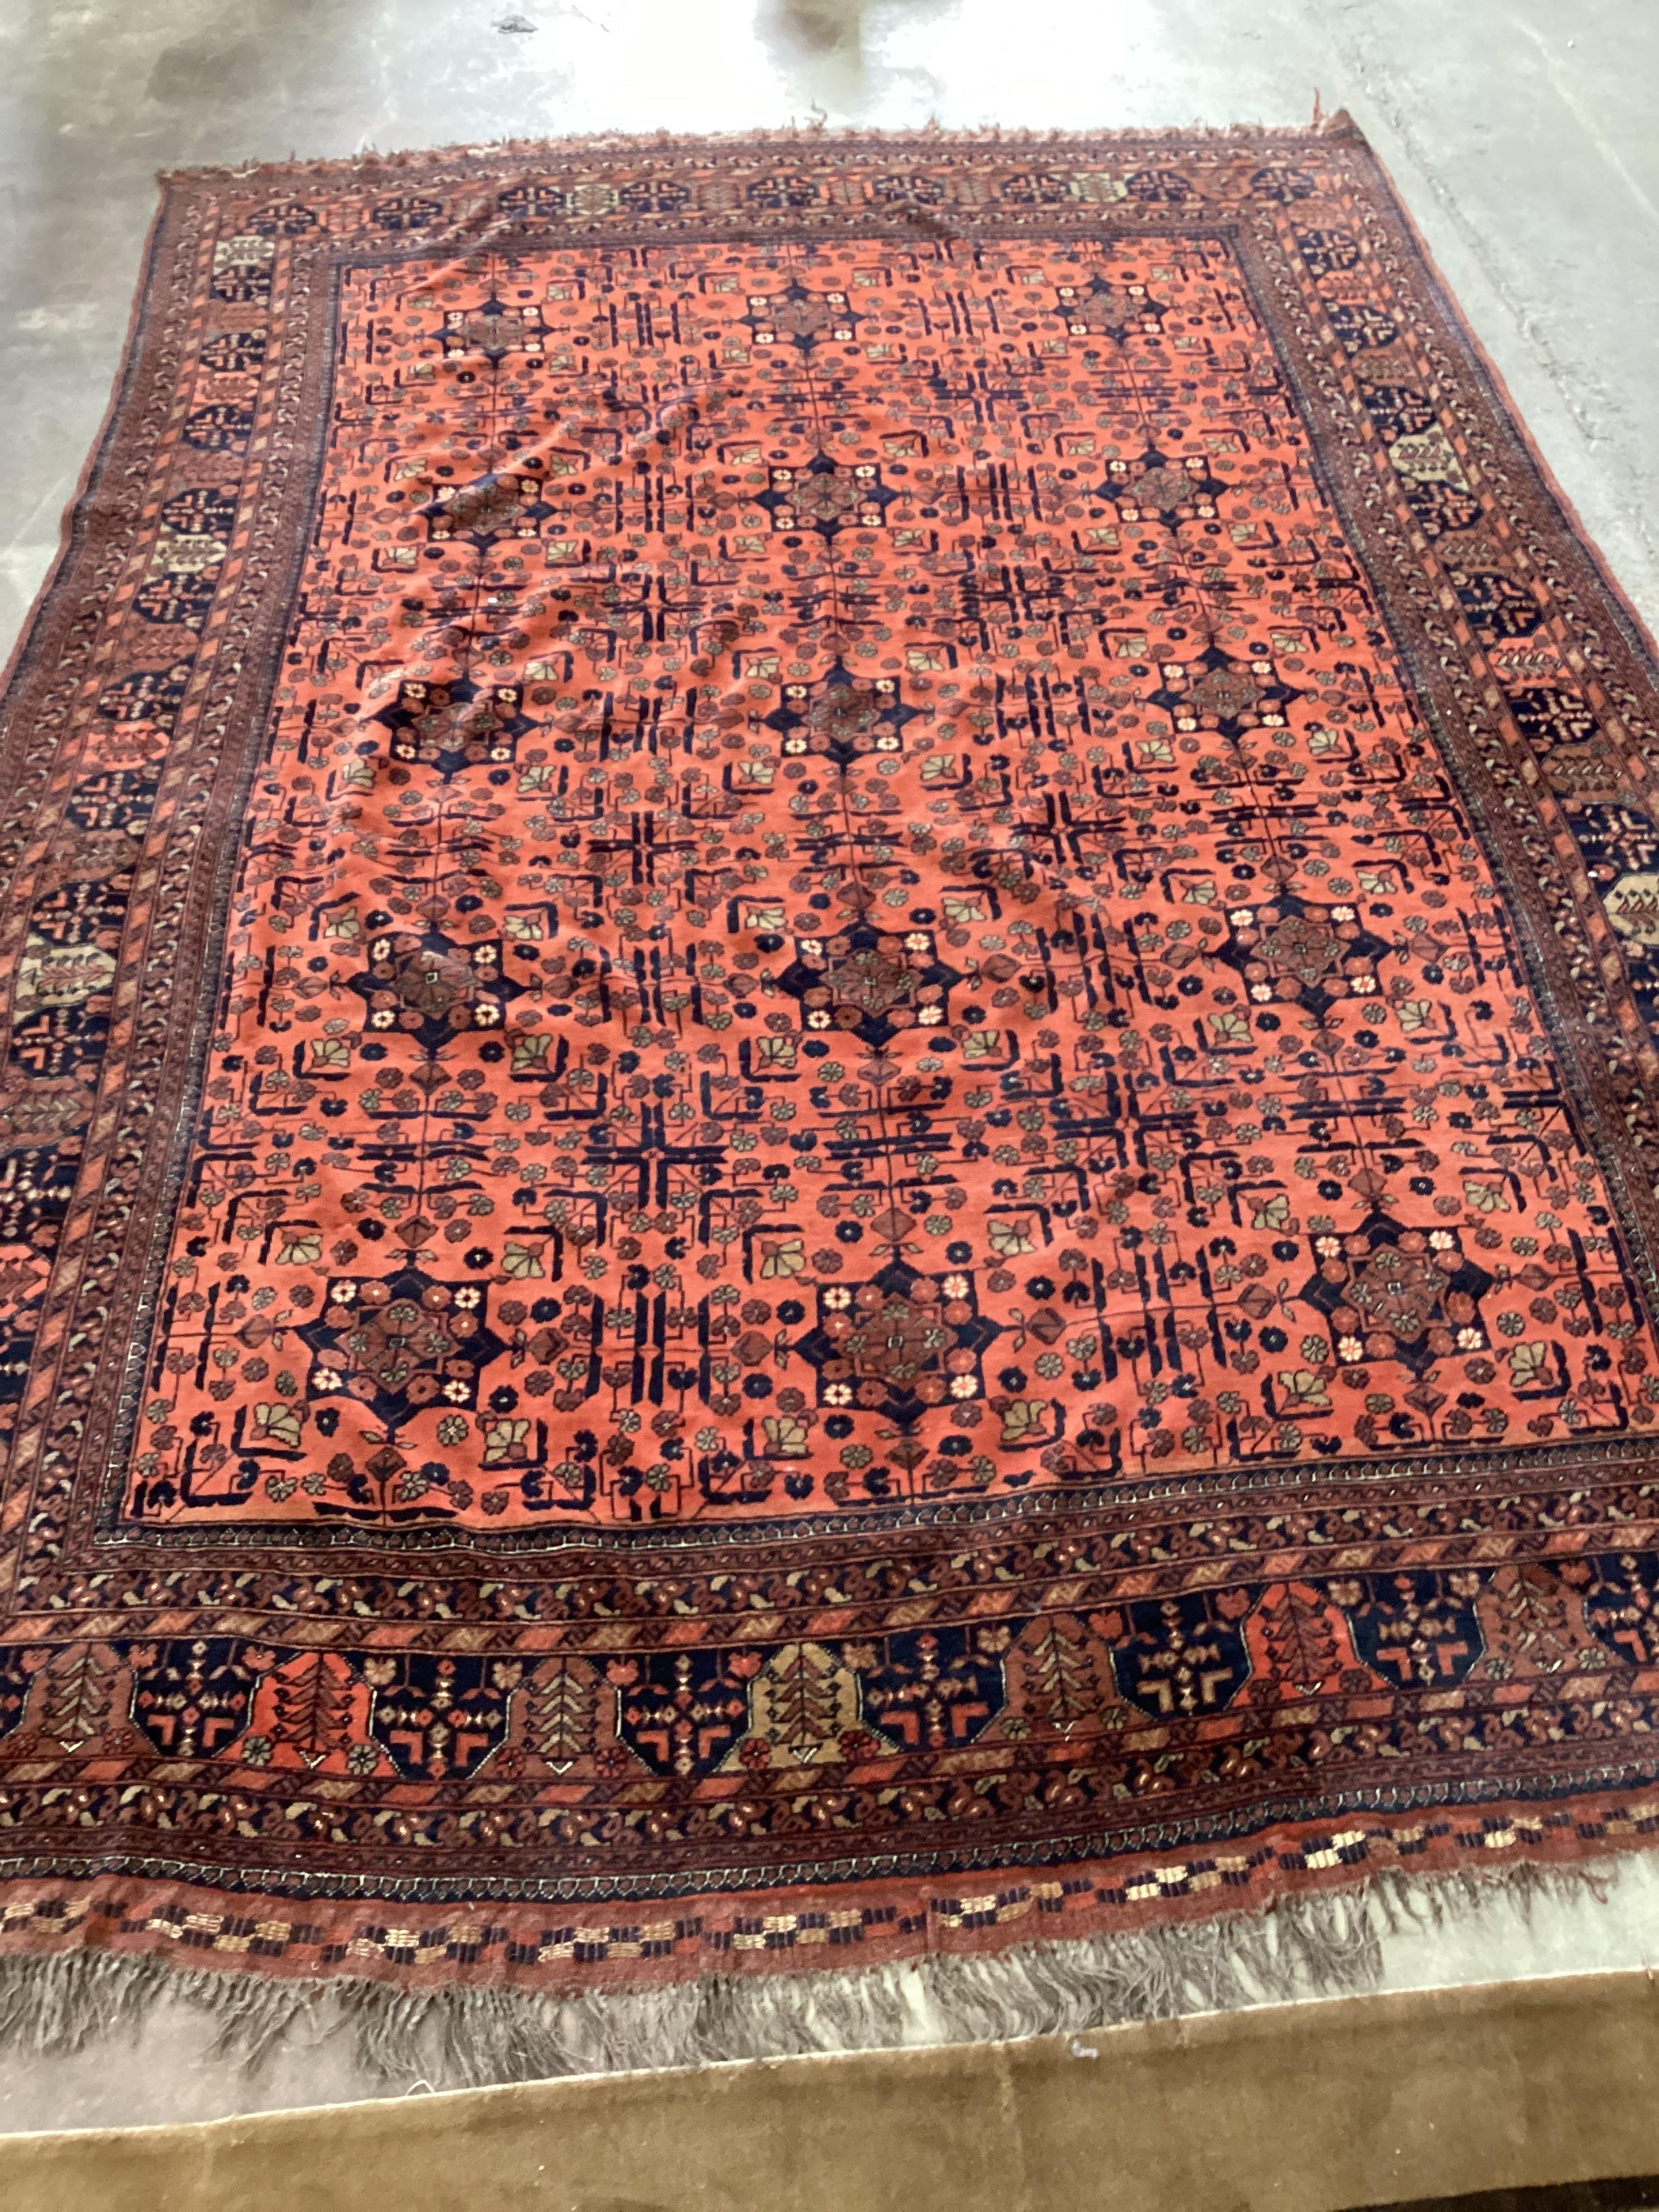 A Belouch red ground carpet, 344 x 235cm